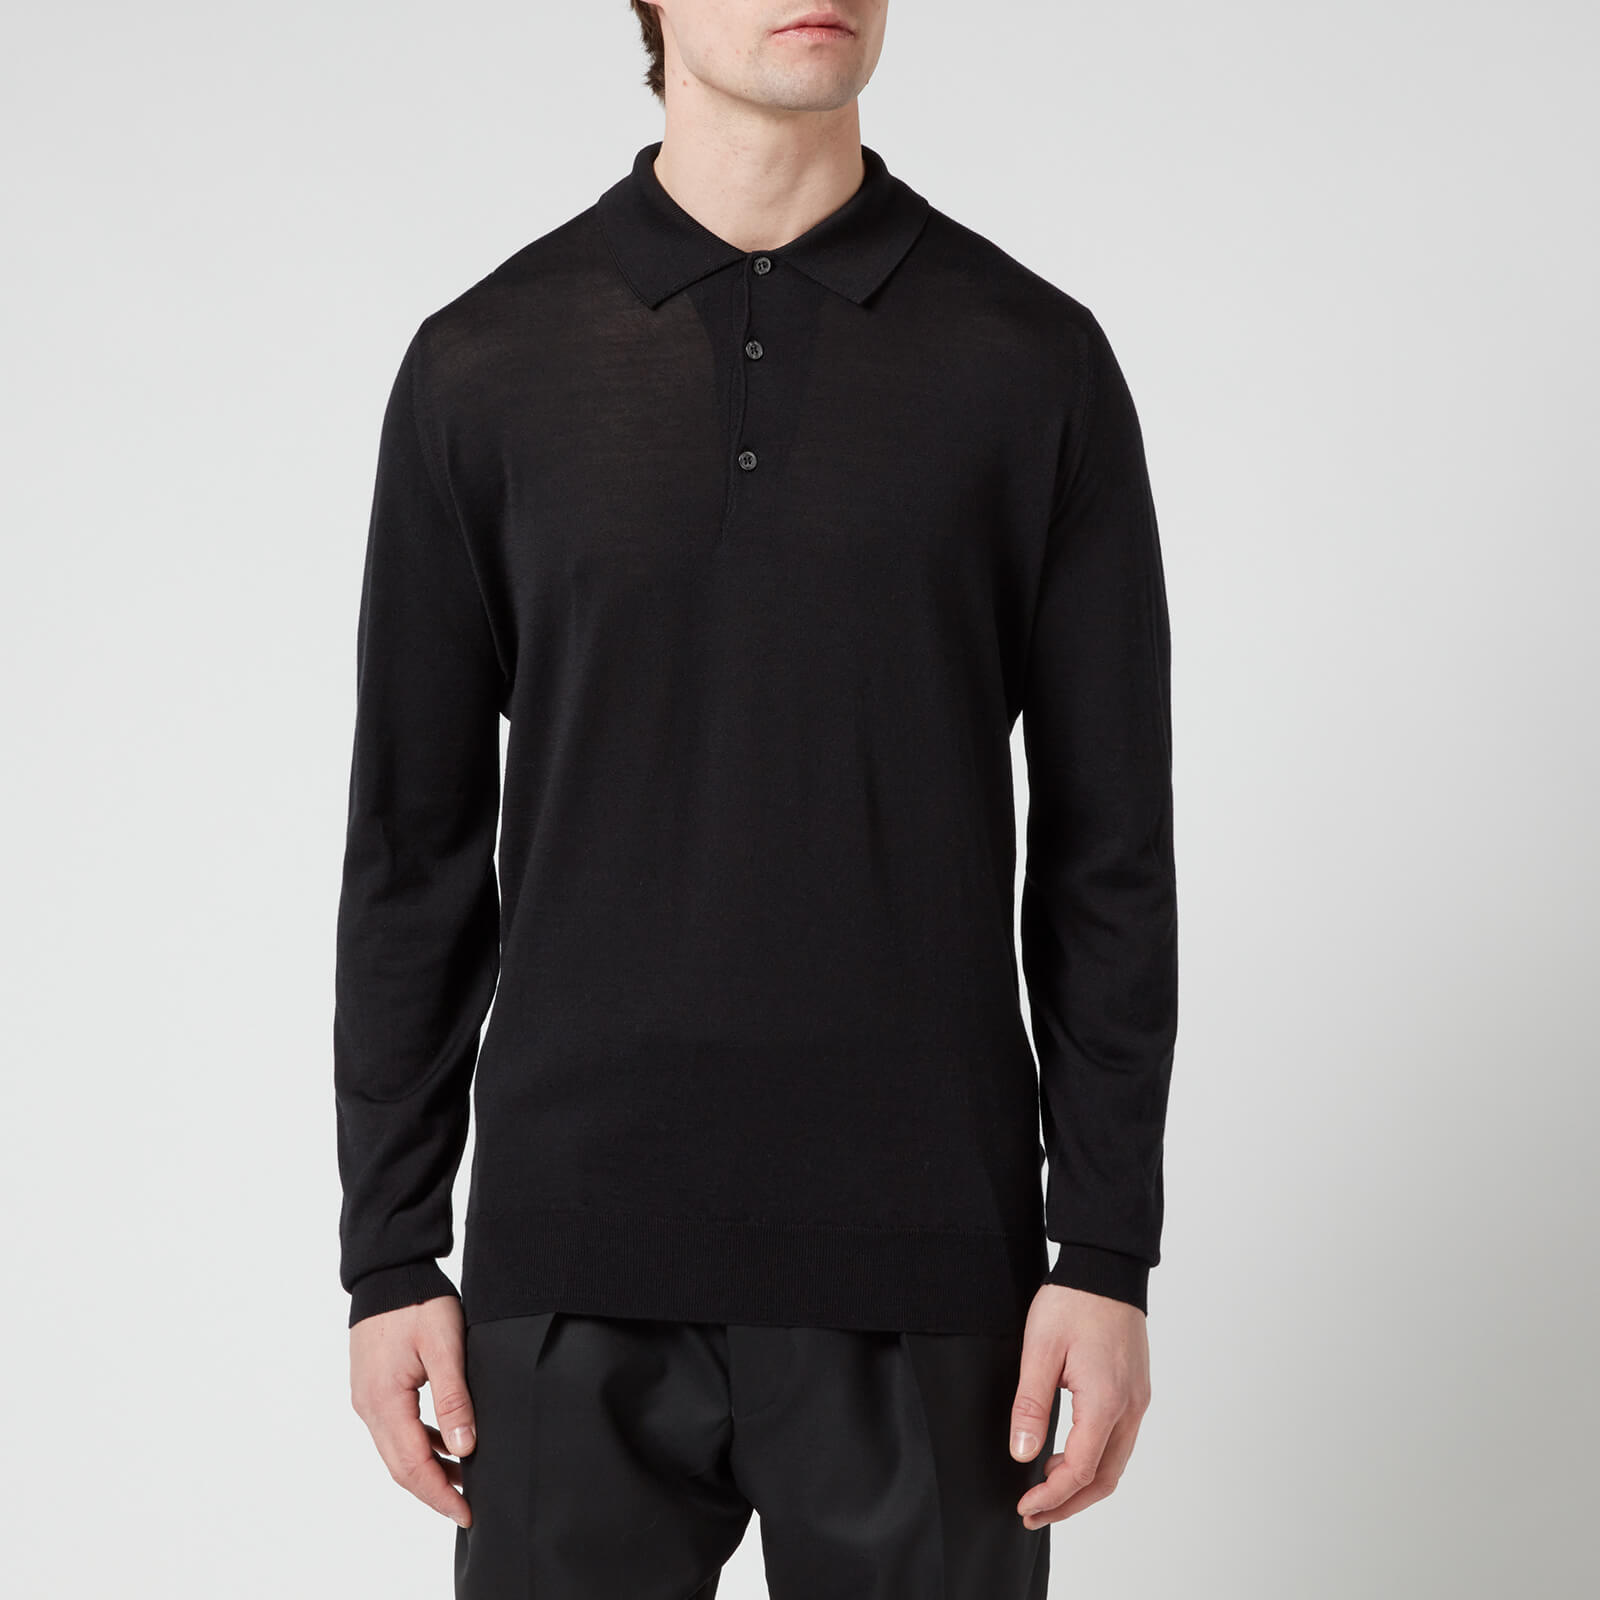 John Smedley Men's Cbelper Long Sleeve Polo Shirt - Black - S